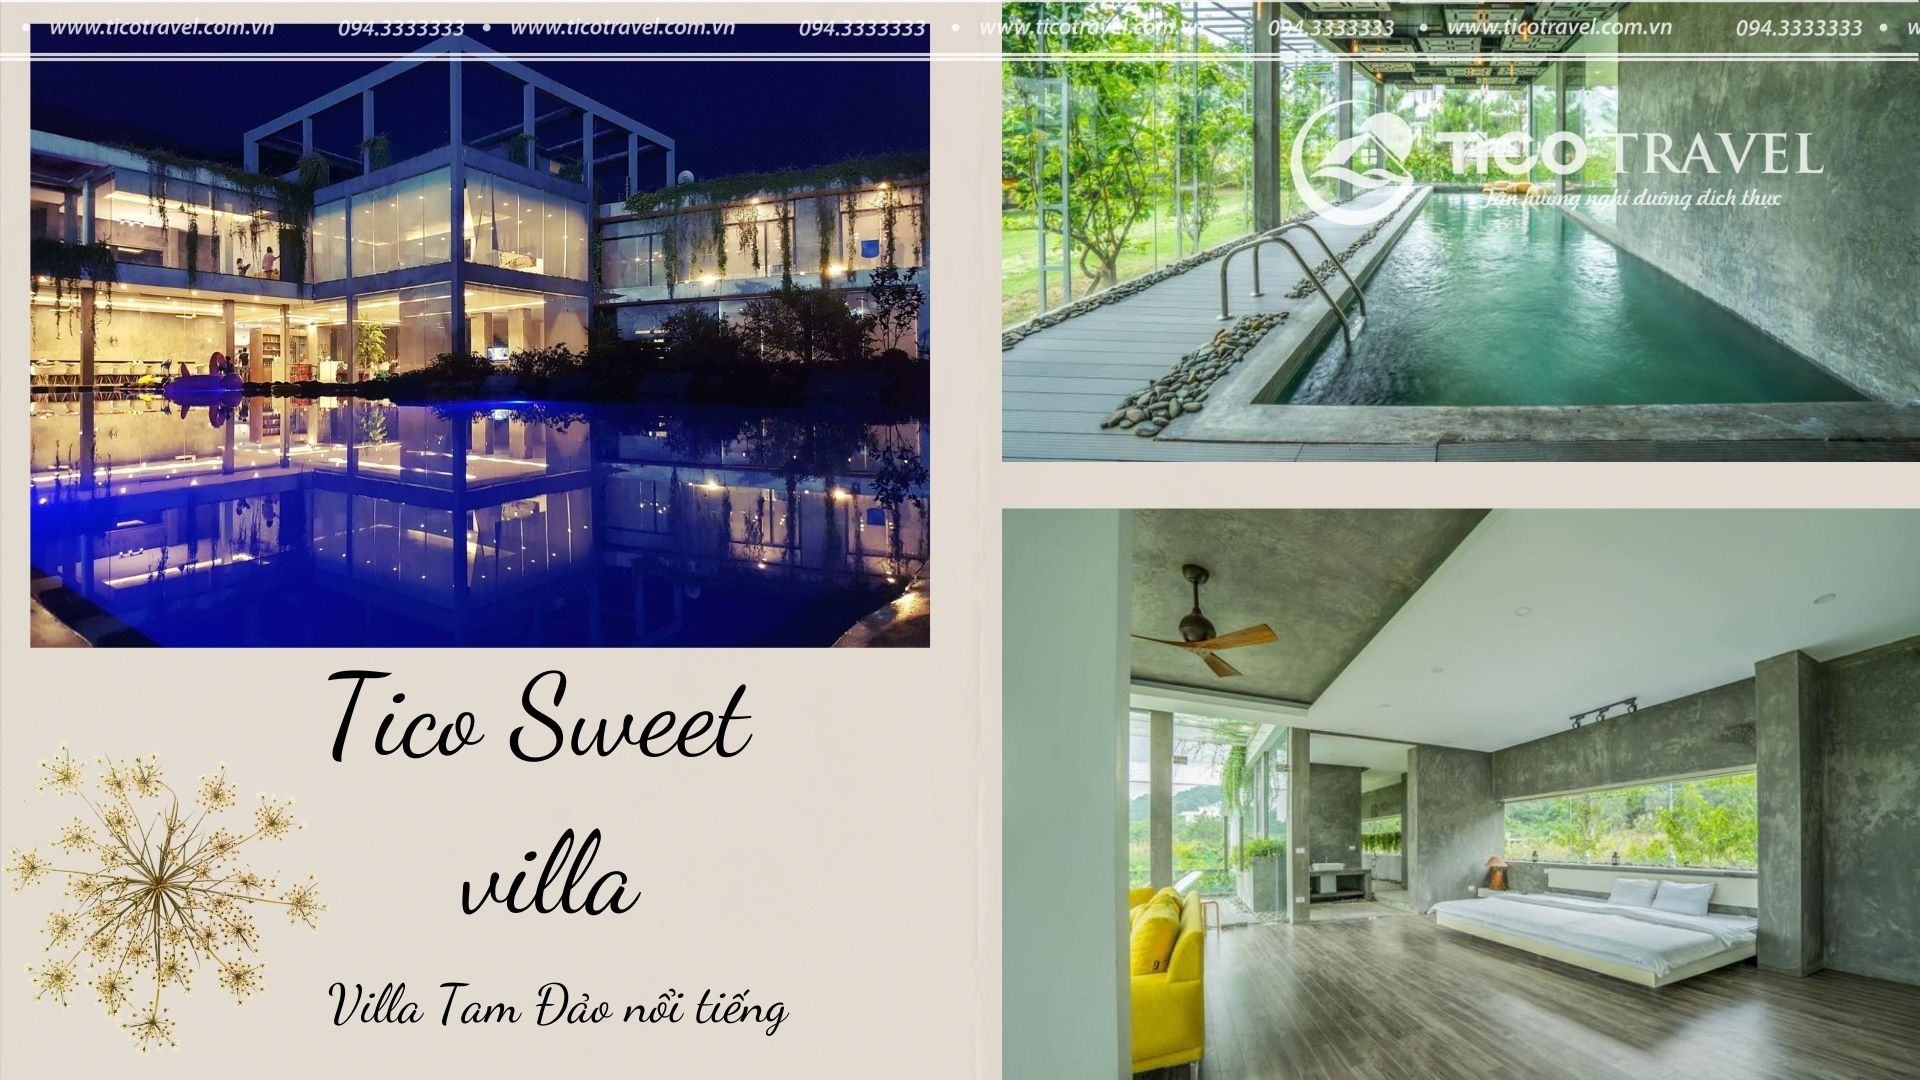 Tico 04 Sweet house - villa quanh Hà Nội nổi tiếng